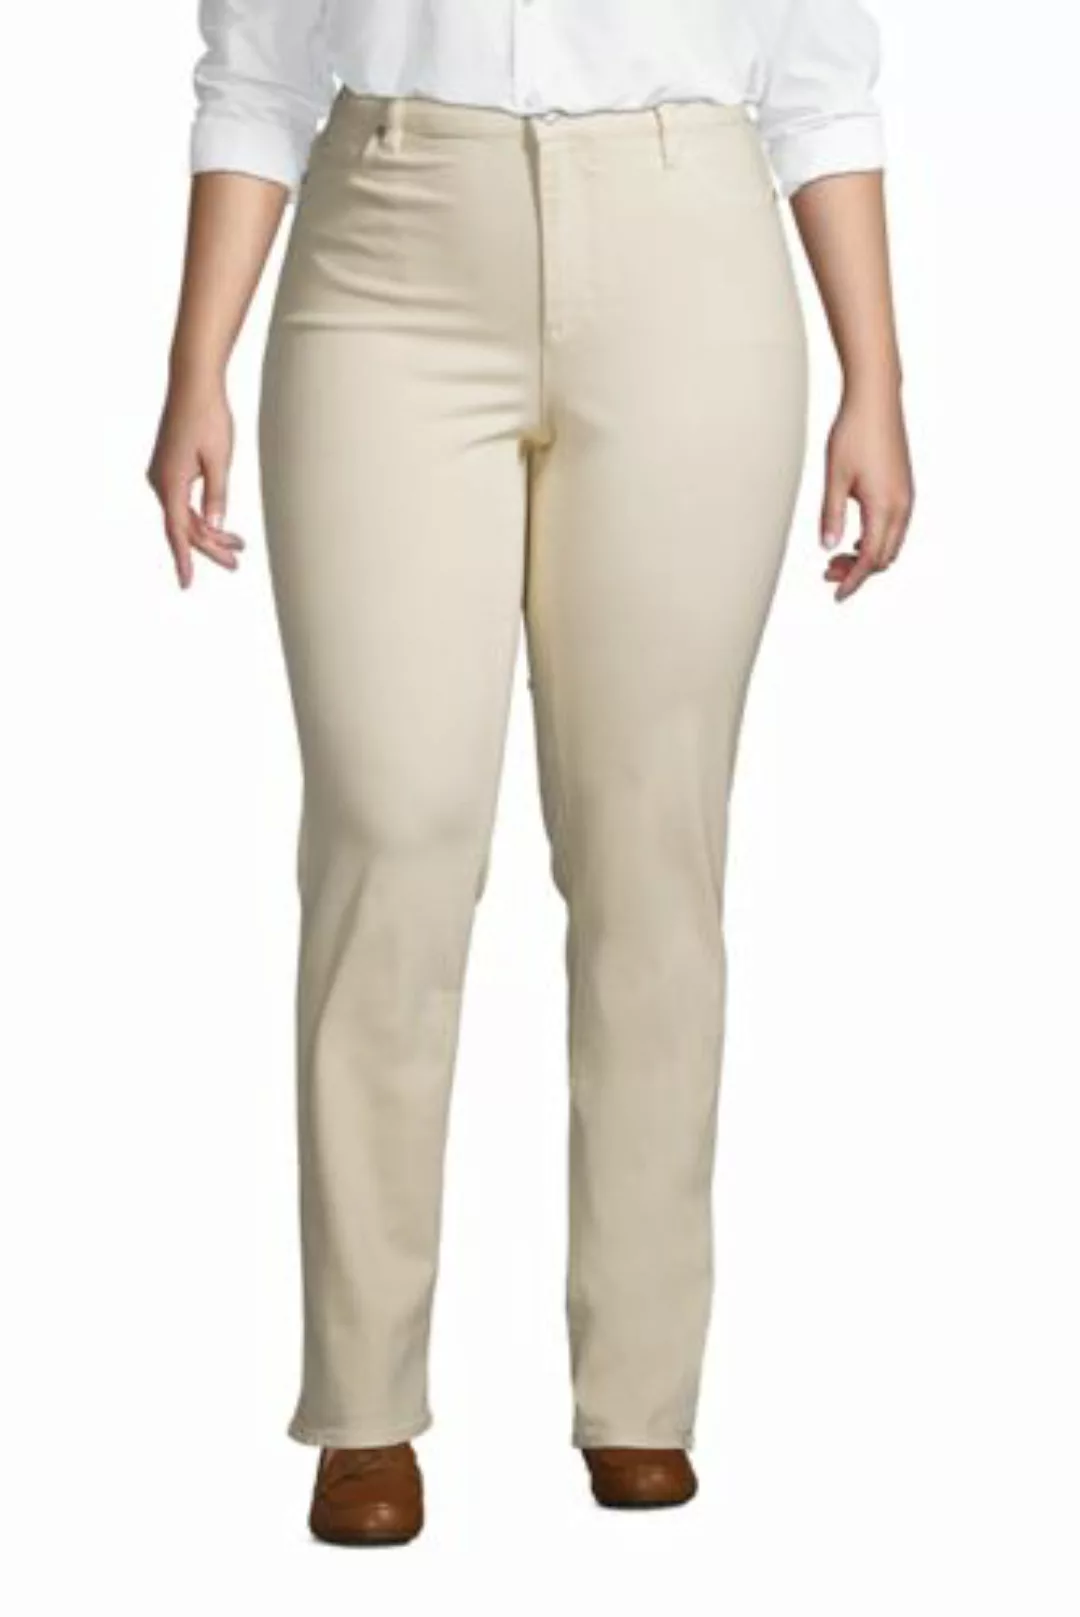 Straight Fit Öko Jeans Mid Waist in großen Größen, Damen, Größe: 54 32 Plus günstig online kaufen